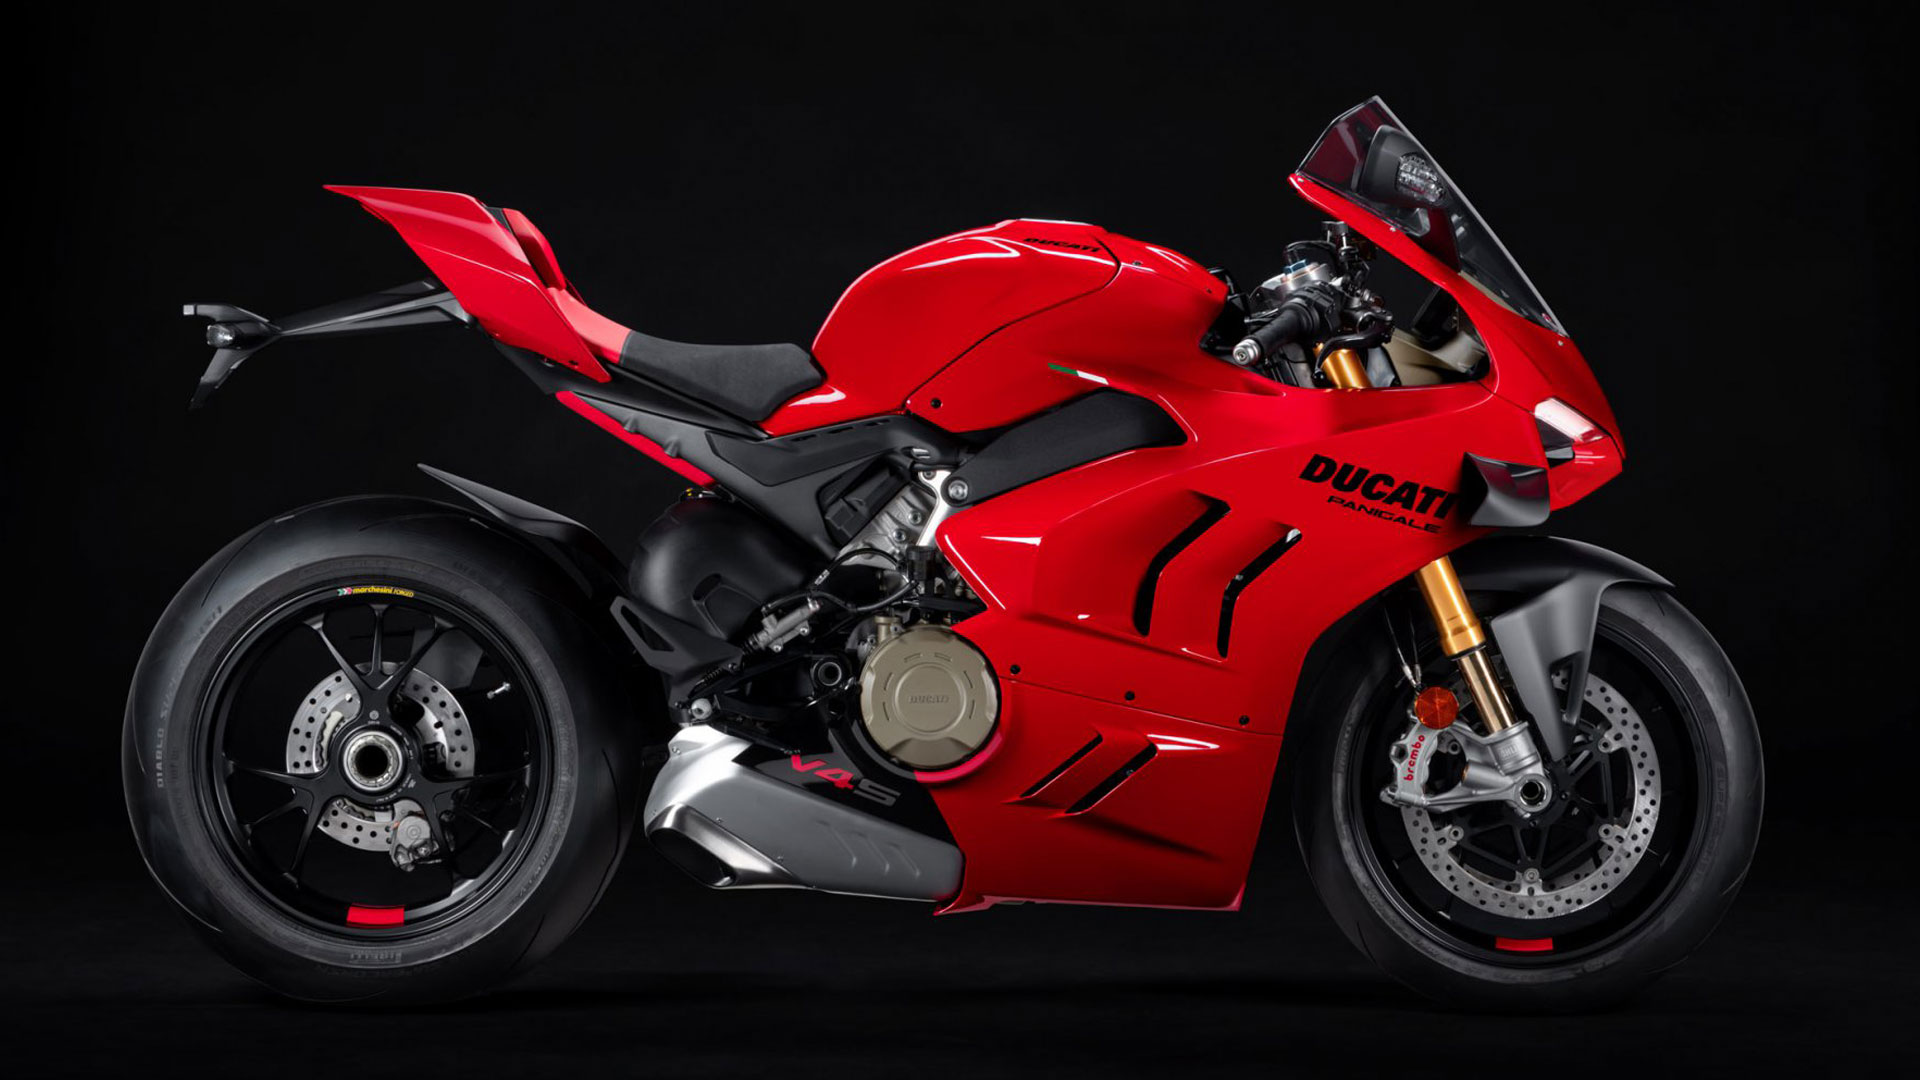 2022 Ducati Panigale V4S for sale at Ducati Preston, Lancashire, Scotland